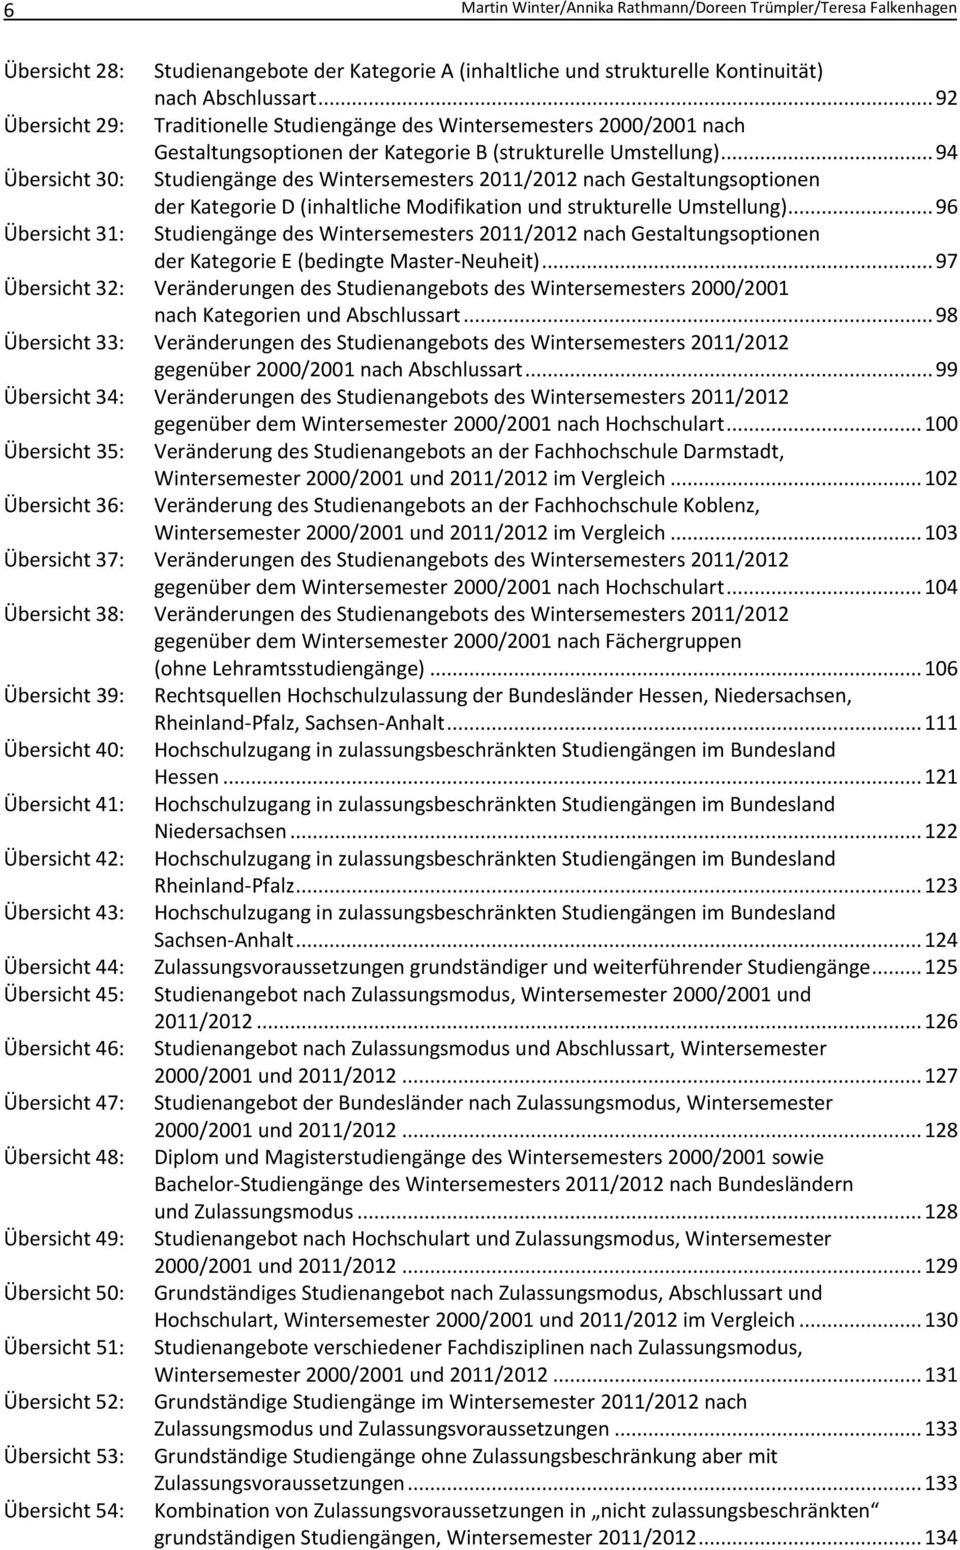 .. 94 Übersicht 30: Studiengänge des Wintersemesters 2011/2012 nach Gestaltungsoptionen der Kategorie D (inhaltliche Modifikation und strukturelle Umstellung).